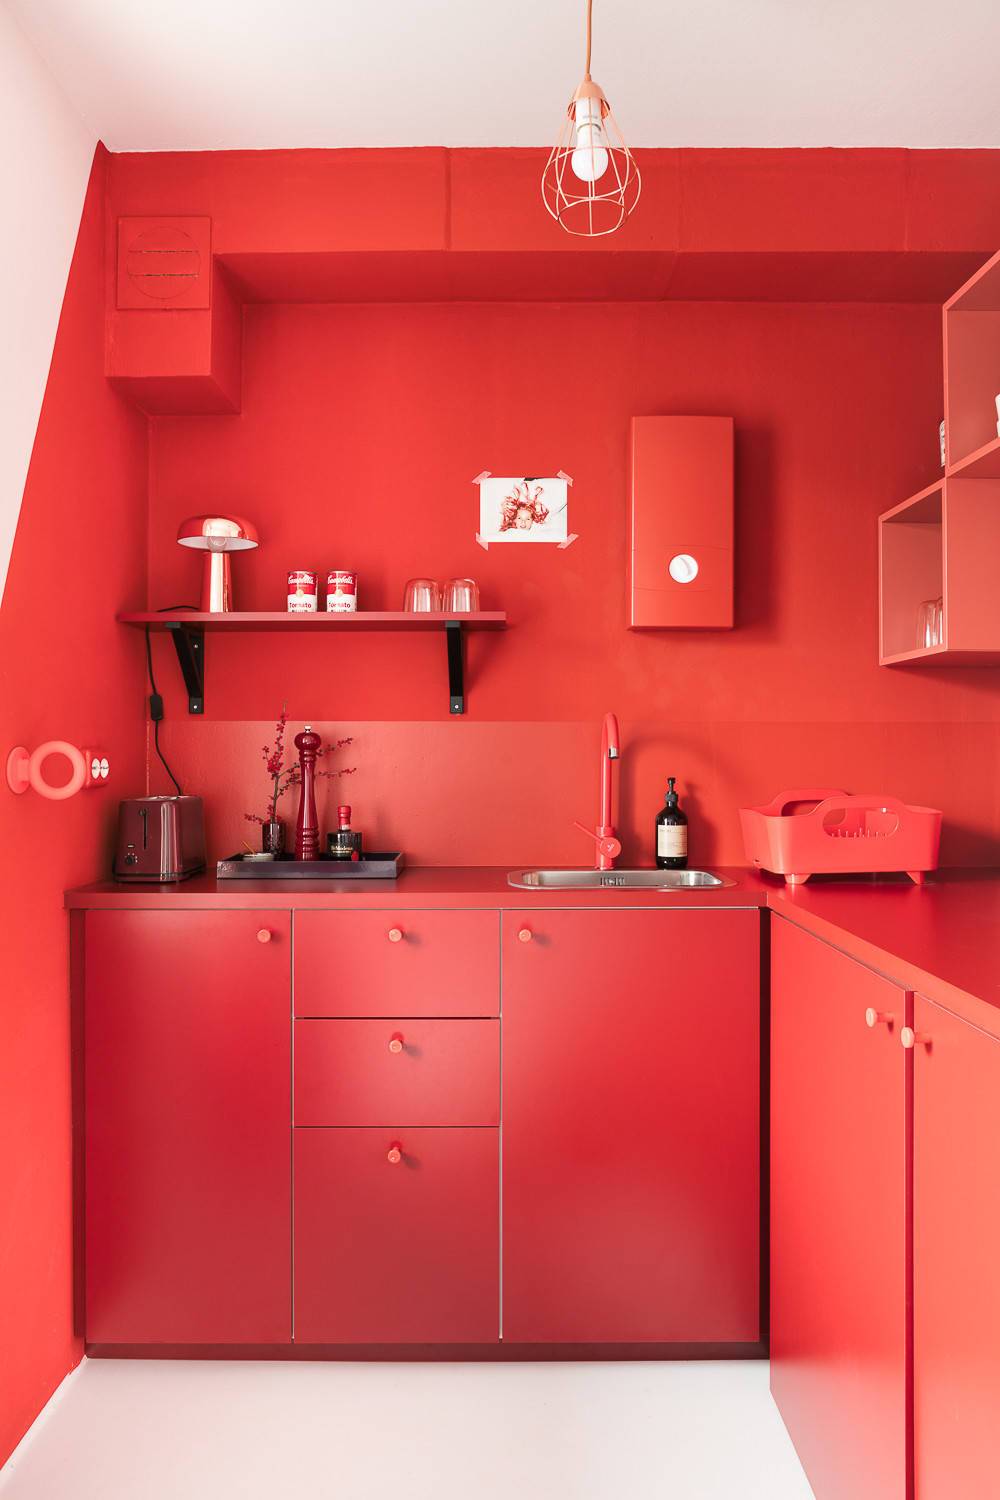 Красные кухни: стили, сочетания, выбор гарнитура, фартука, фото в интерьере